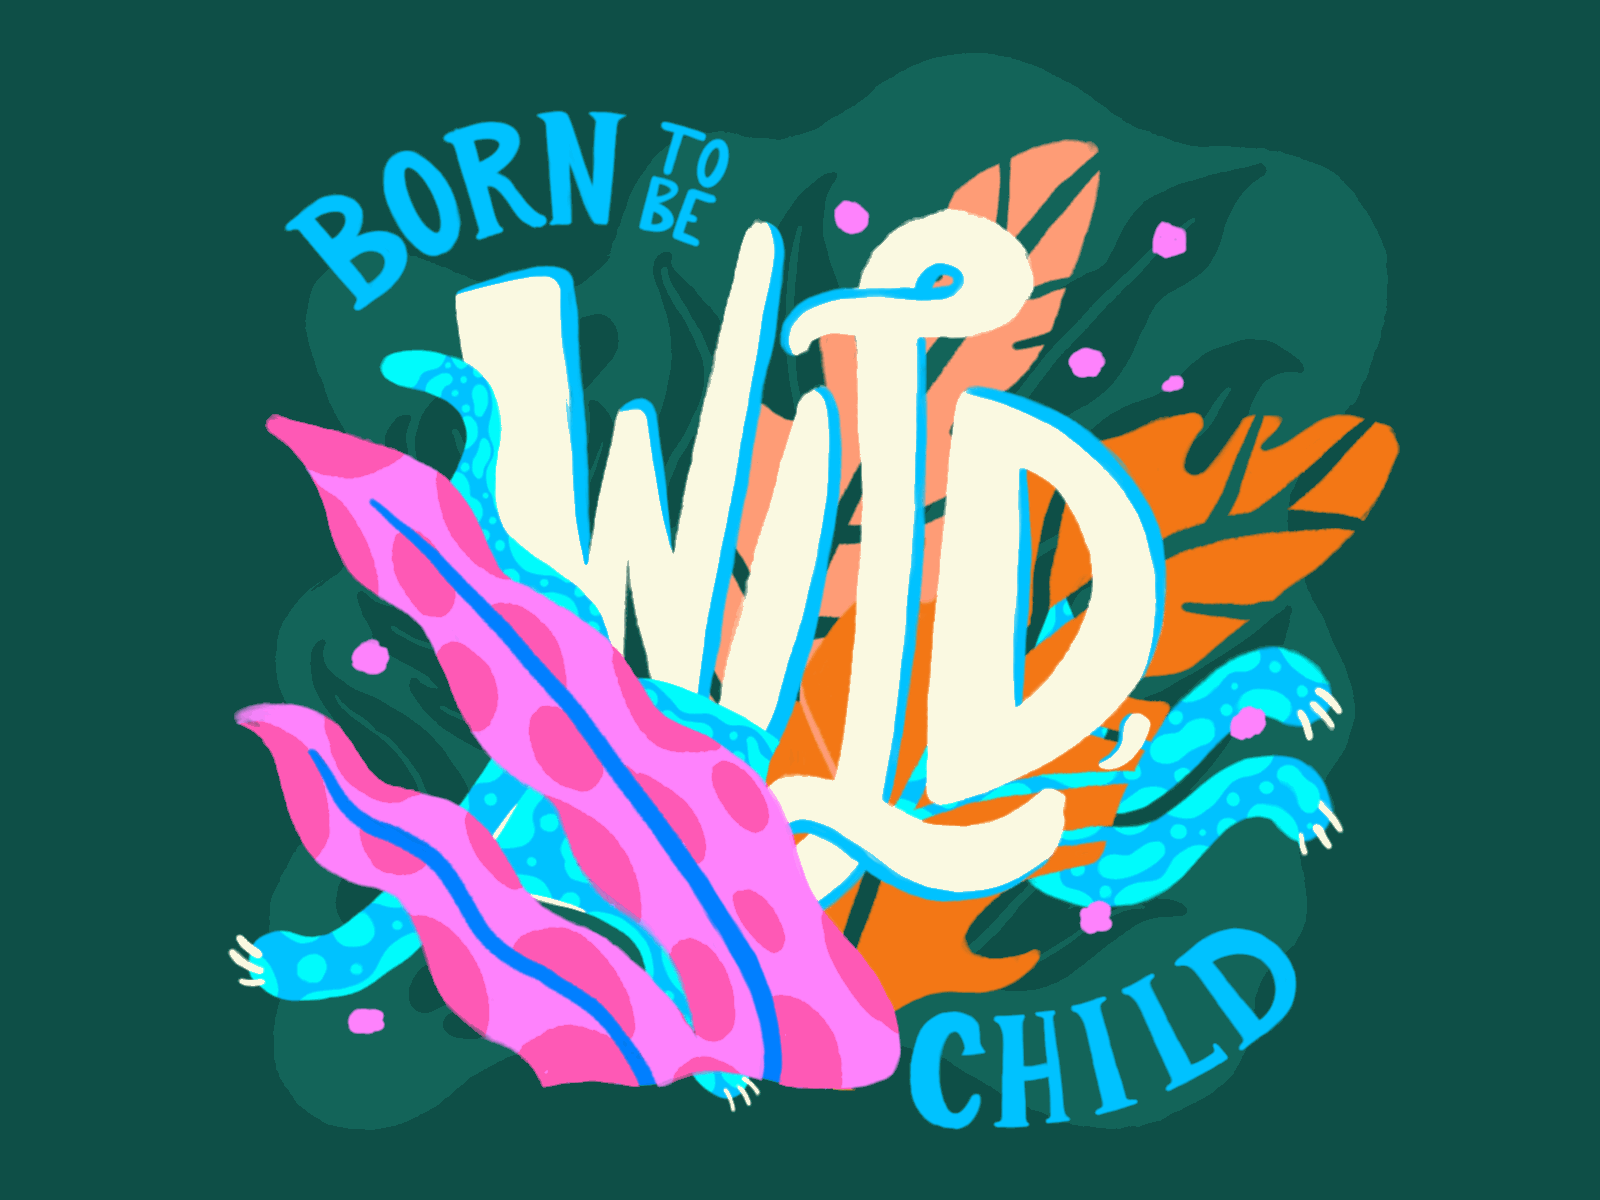 born-to-be-wild-child-by-kristen-brittain-on-dribbble